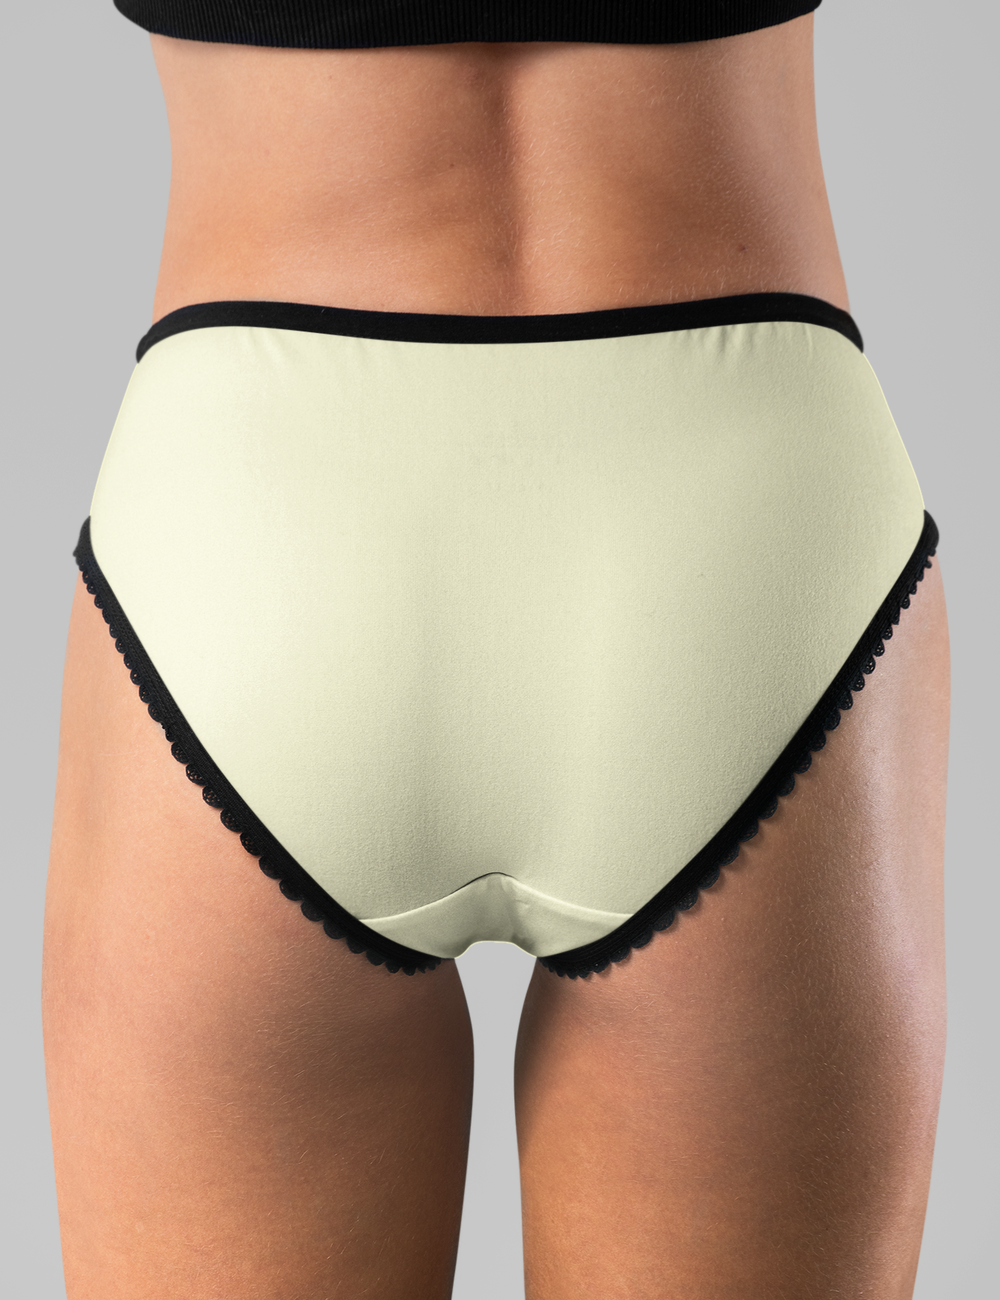 Le Crème Creamy Colored Women's Intimate Underwear Briefs - OniTakai